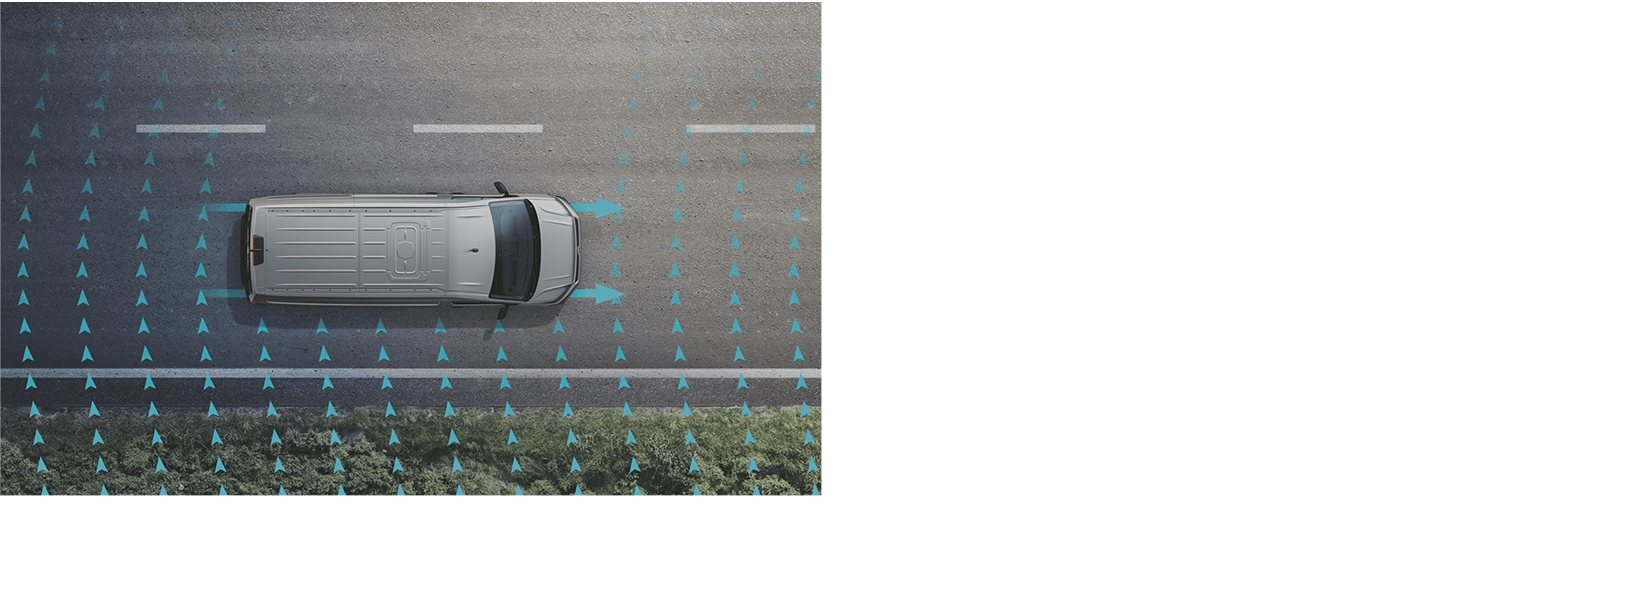 Crosswind Assist 側風穩定防滑系統
          側風穩定輔助系統將配合ESP電子行車穩定系統，當偵測到車身突然受陣風影響而偏移時，剎車系統會介入，將車輛導回原駕駛路線。